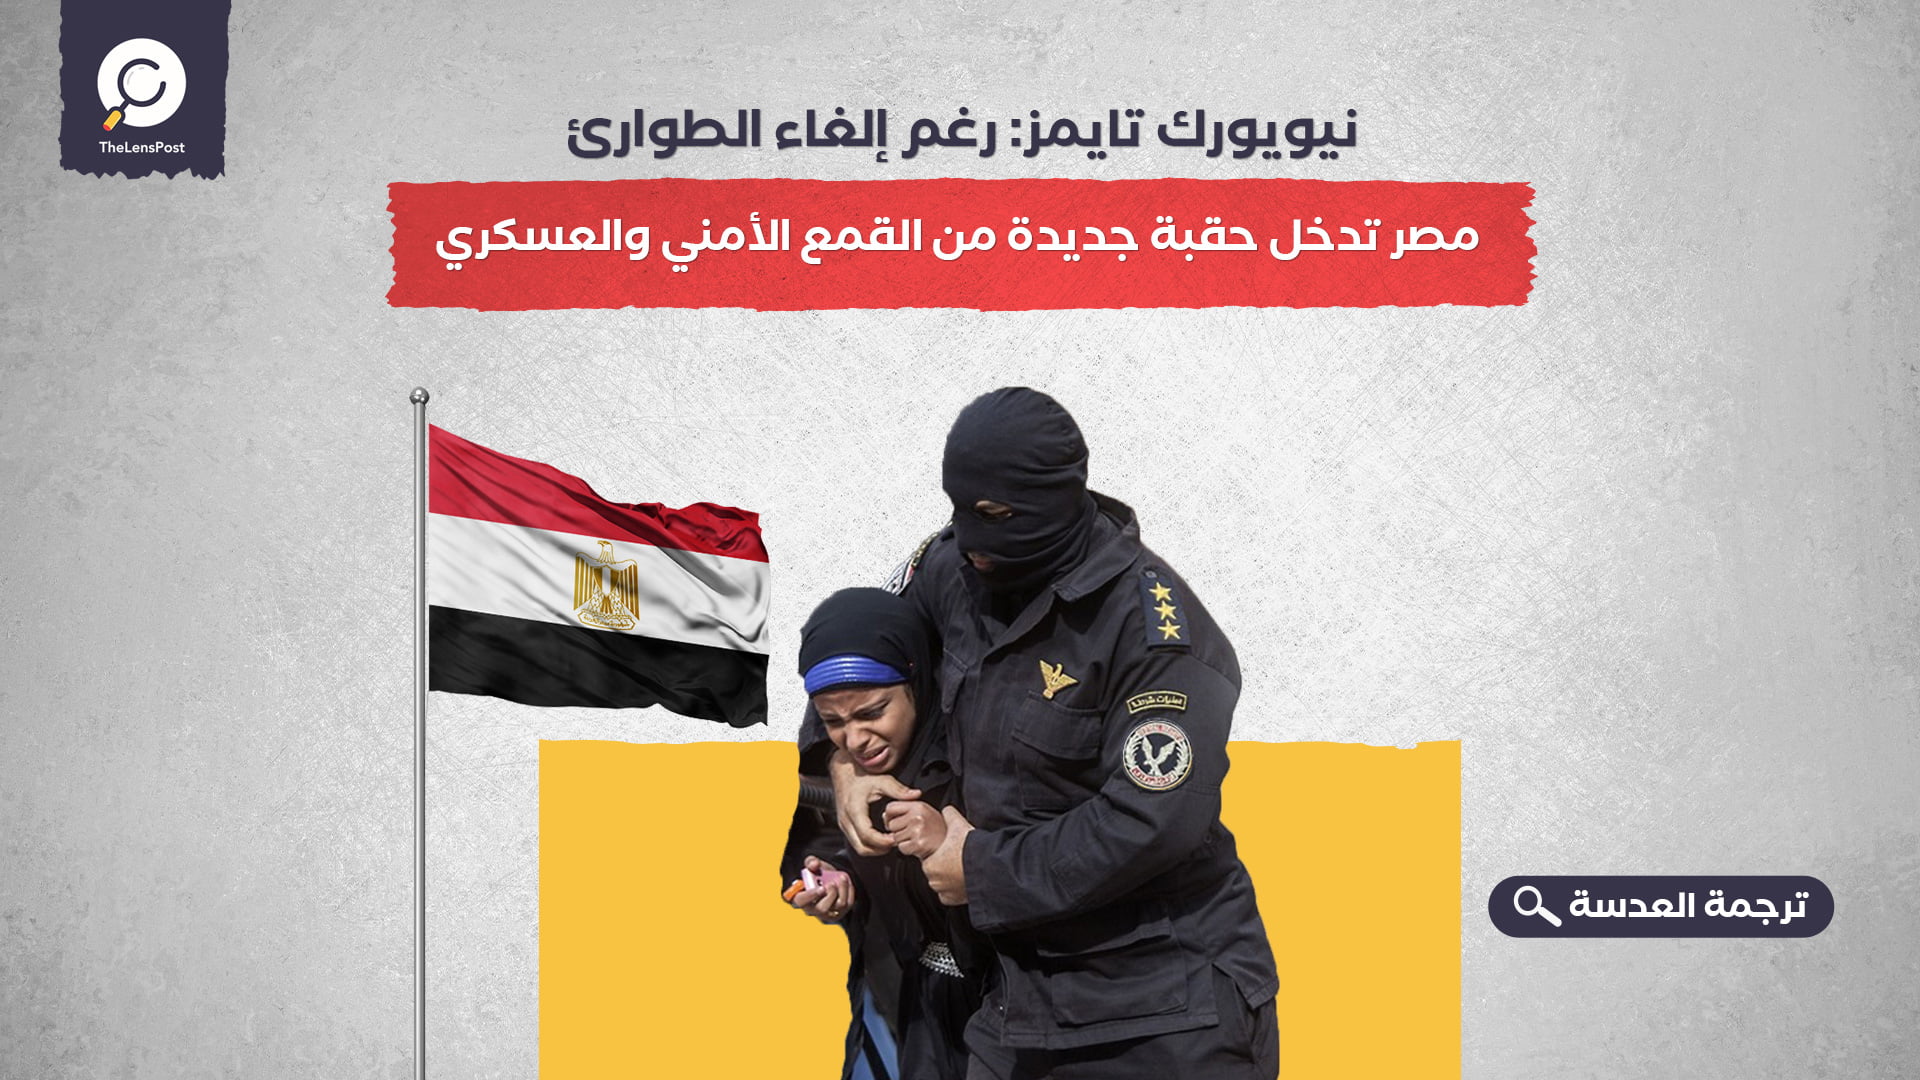 نيويورك تايمز: رغم إلغاء الطوارئ... مصر تدخل حقبة جديدة من القمع الأمني والعسكري